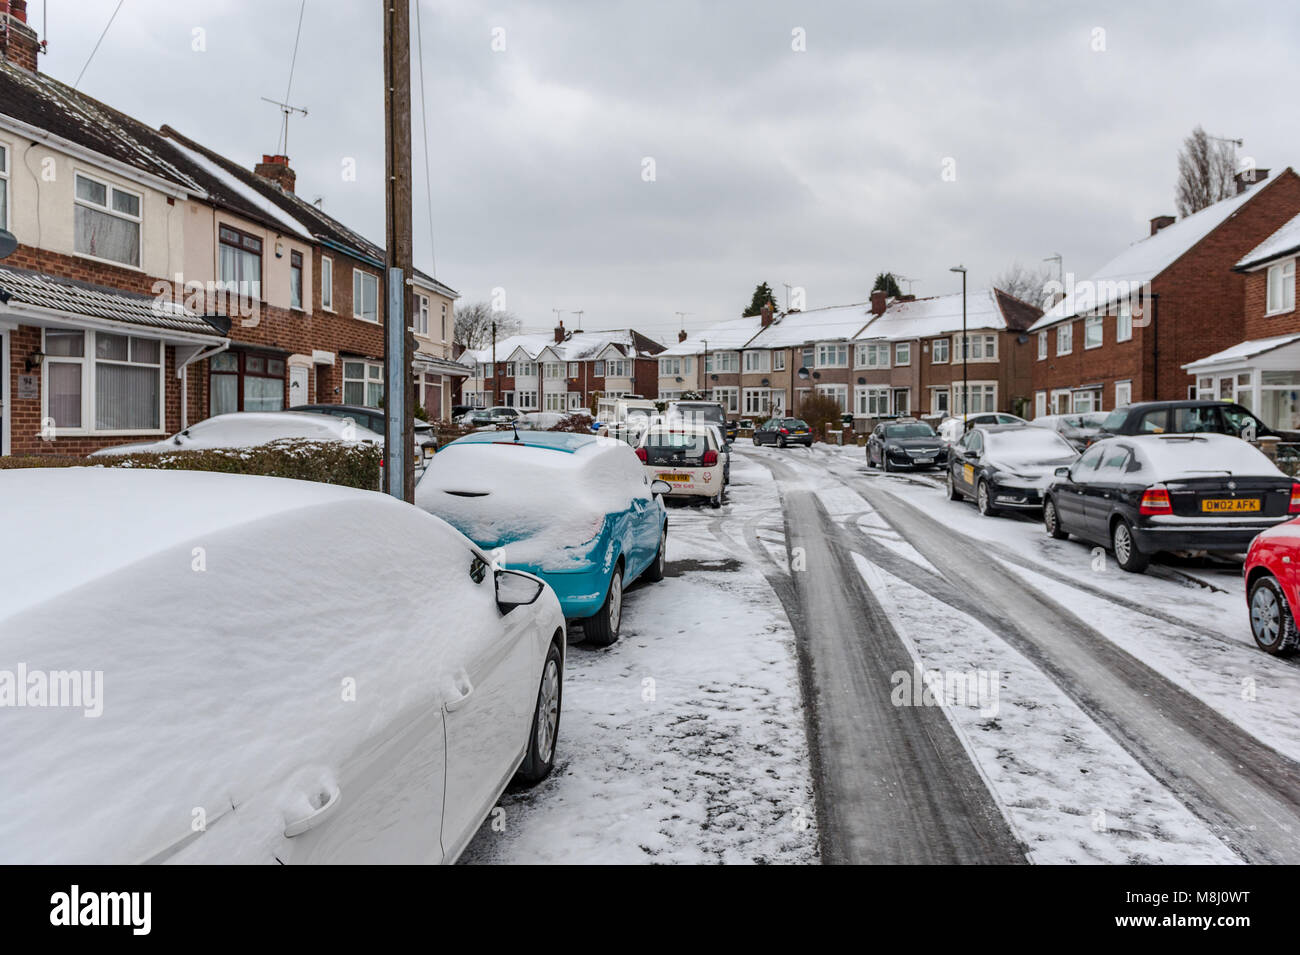 Coventry, Royaume-Uni. 18 mars 2018. Après une nuit de neige, les routes se sont tournées vers la glace, rendant les conditions de conduite très dangereuses. Un avertissement de temps d'ambre pour la neige et la glace est toujours en place avec des températures amèrement froides attendues pour le reste de la journée. Crédit : AG News/Alay Live News. Banque D'Images